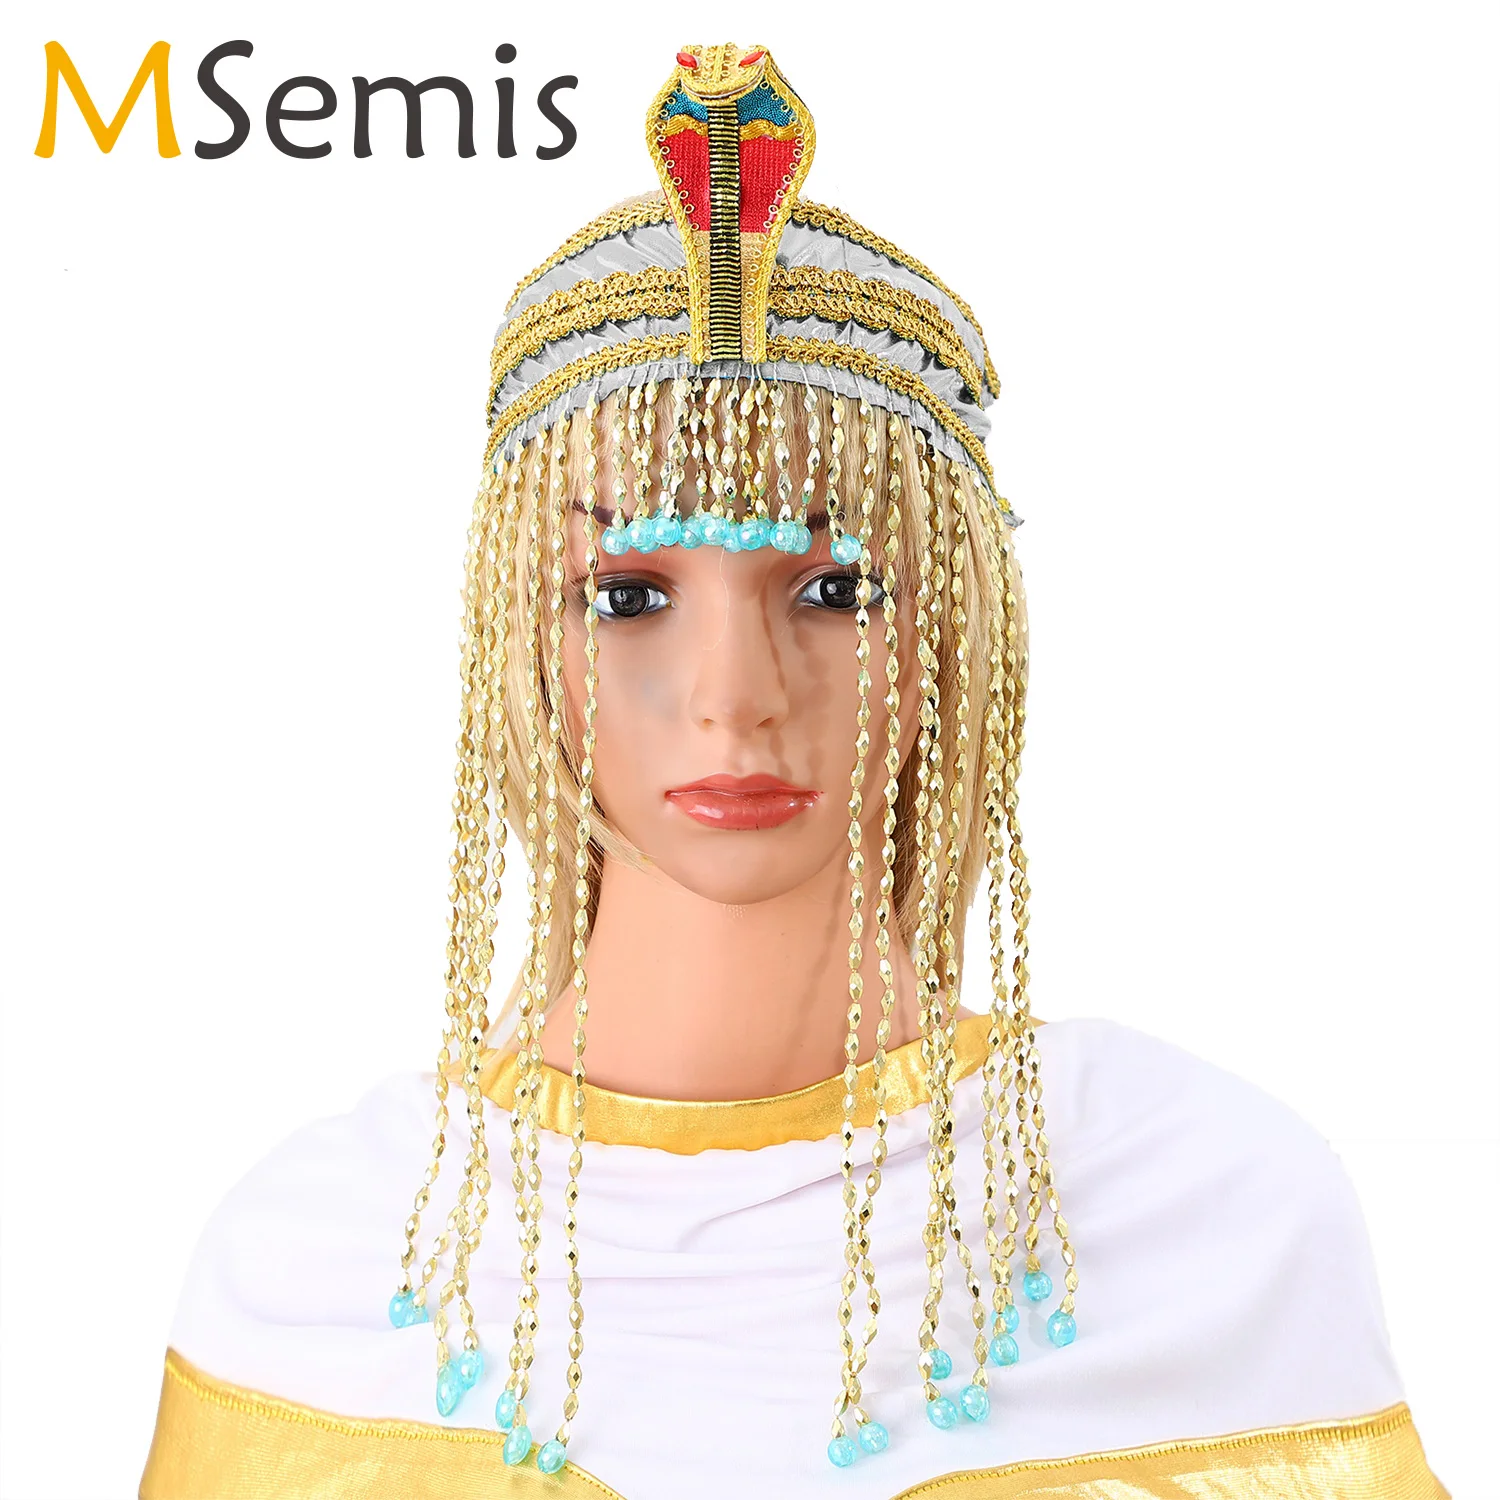 

Голова змеи из Египта, египетская Клеопатра, головной убор из бисера, аксессуары для костюма Фараона на Хэллоуин, реквизит для косплея